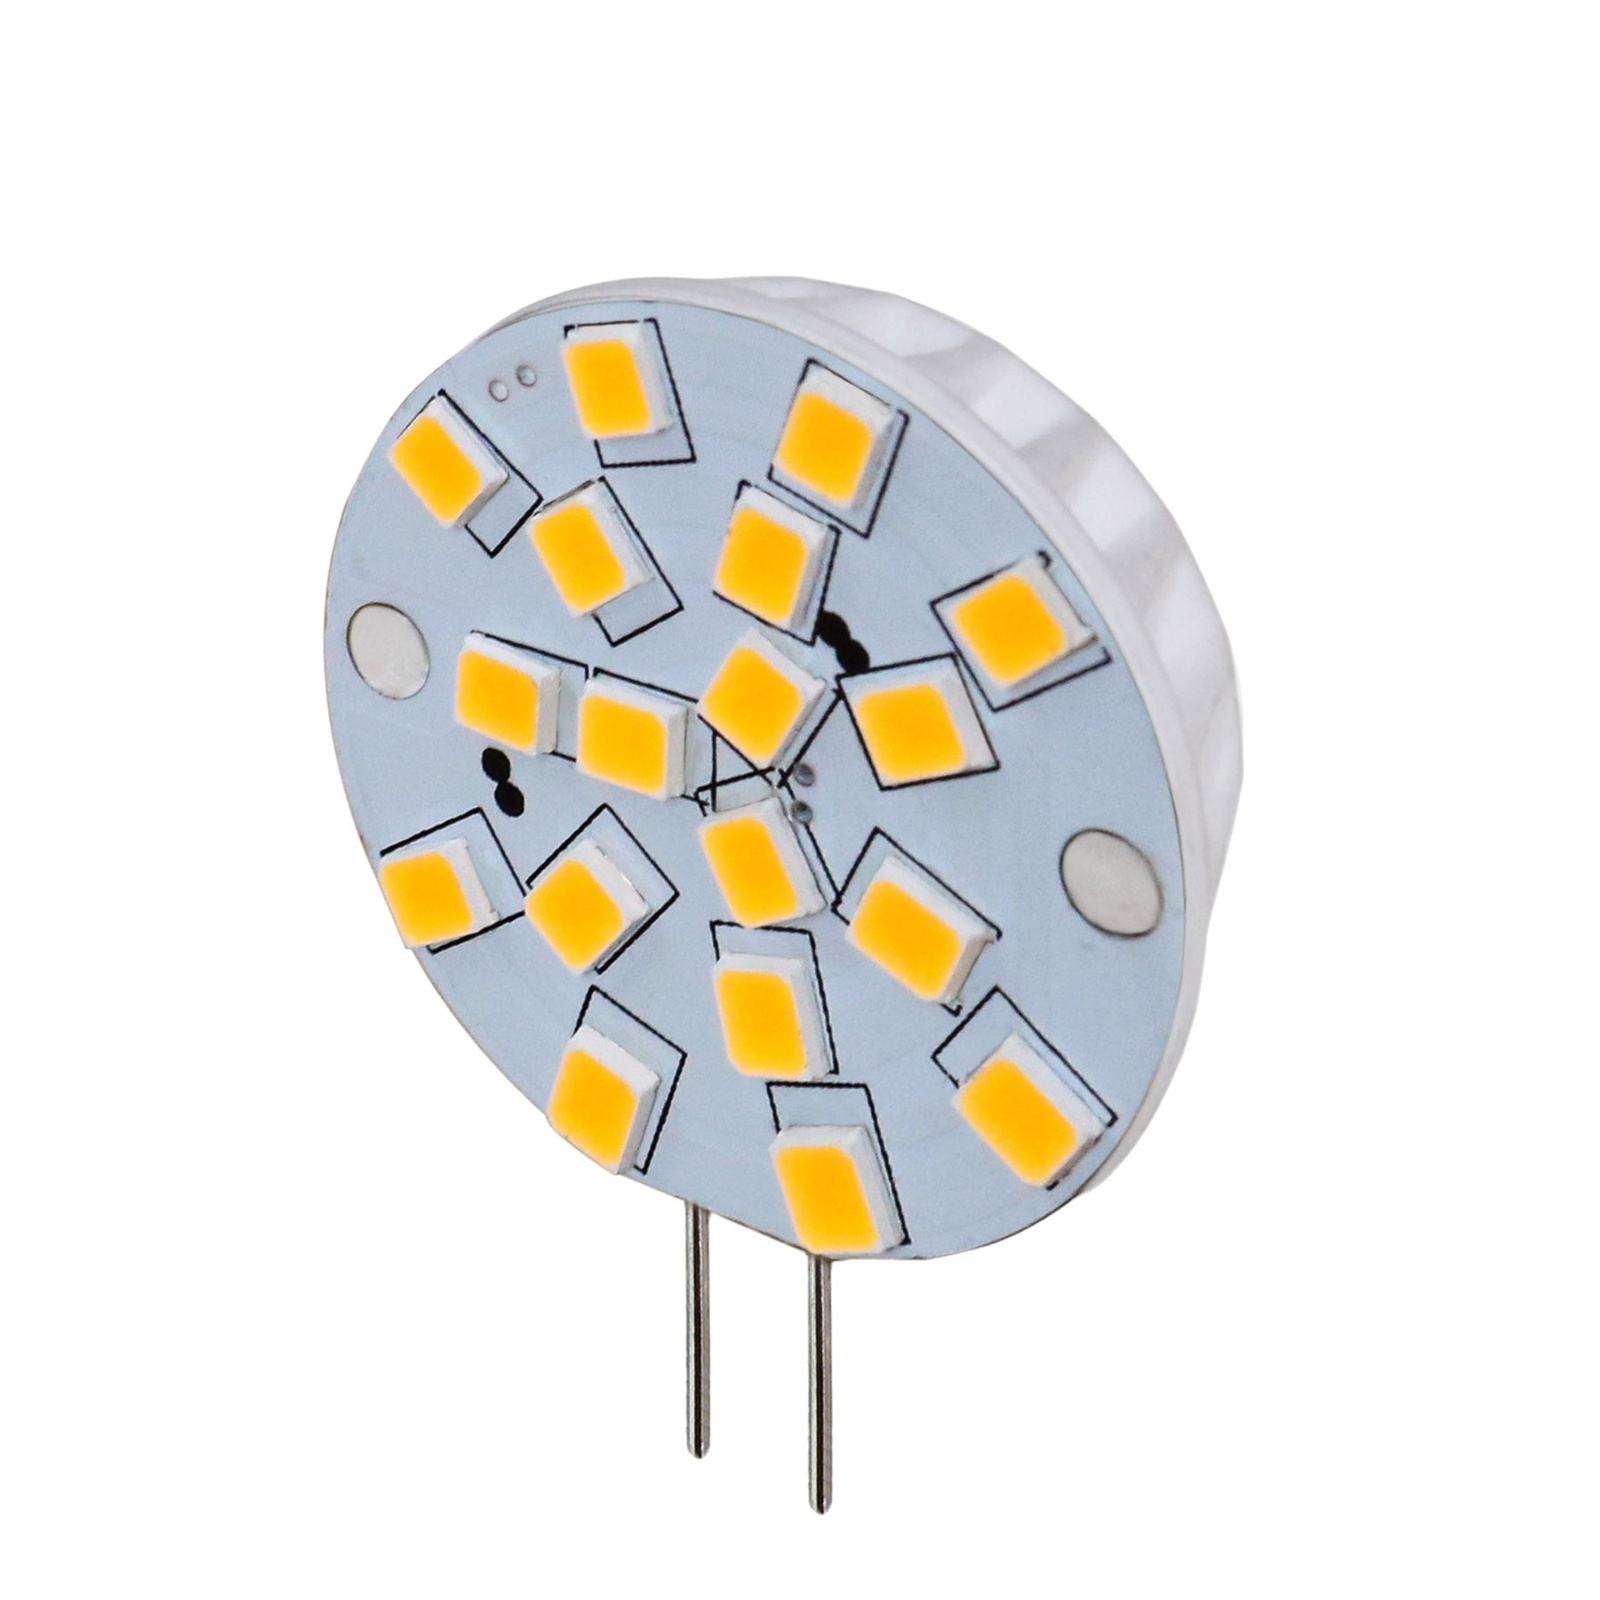 Arcchio LED-pliidisokkel G4 2,7W 830 ümmargune komplekt, 3 tükki